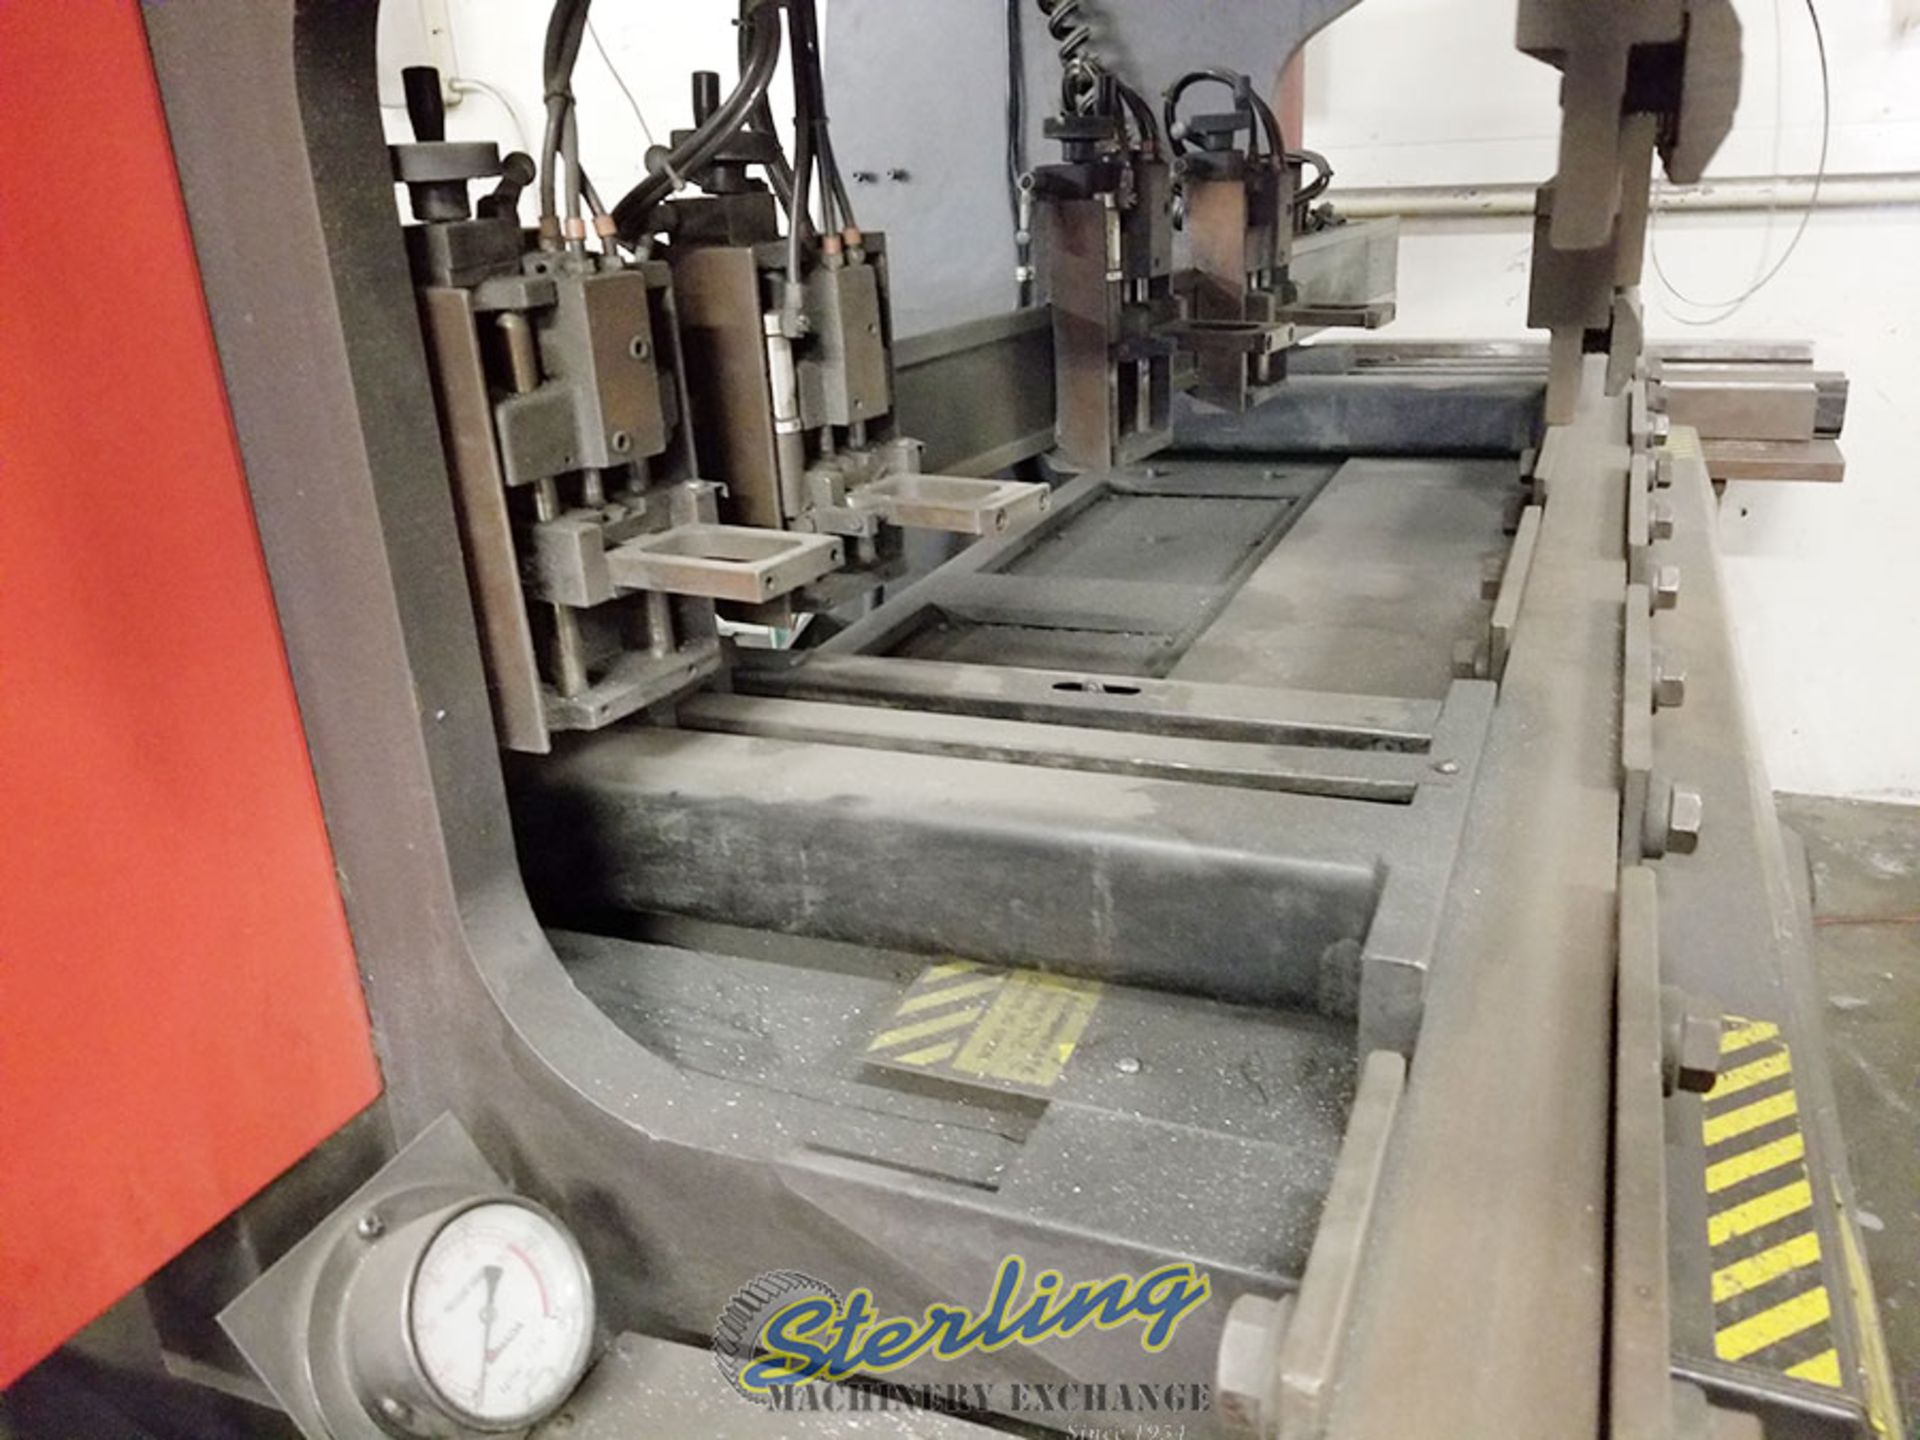 Amada RG-50 CNC Hydraulic Press Brake, NC9EXII Cnc Control (Location- Whittier, Ca. Customer Load - Image 3 of 4